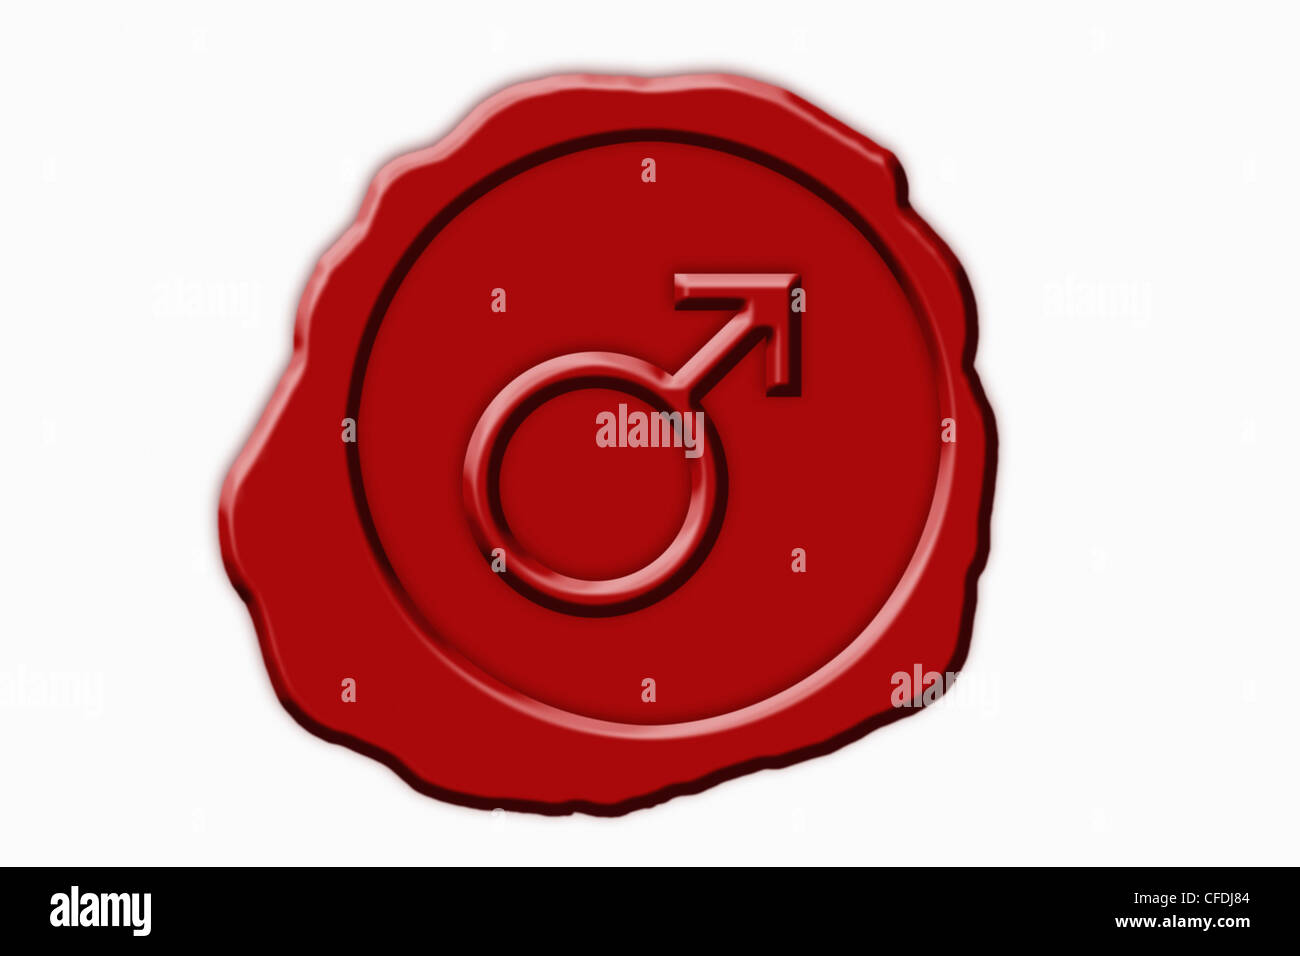 Dettaglio foto di un sigillo rosso con un simbolo maschile nel mezzo Foto Stock